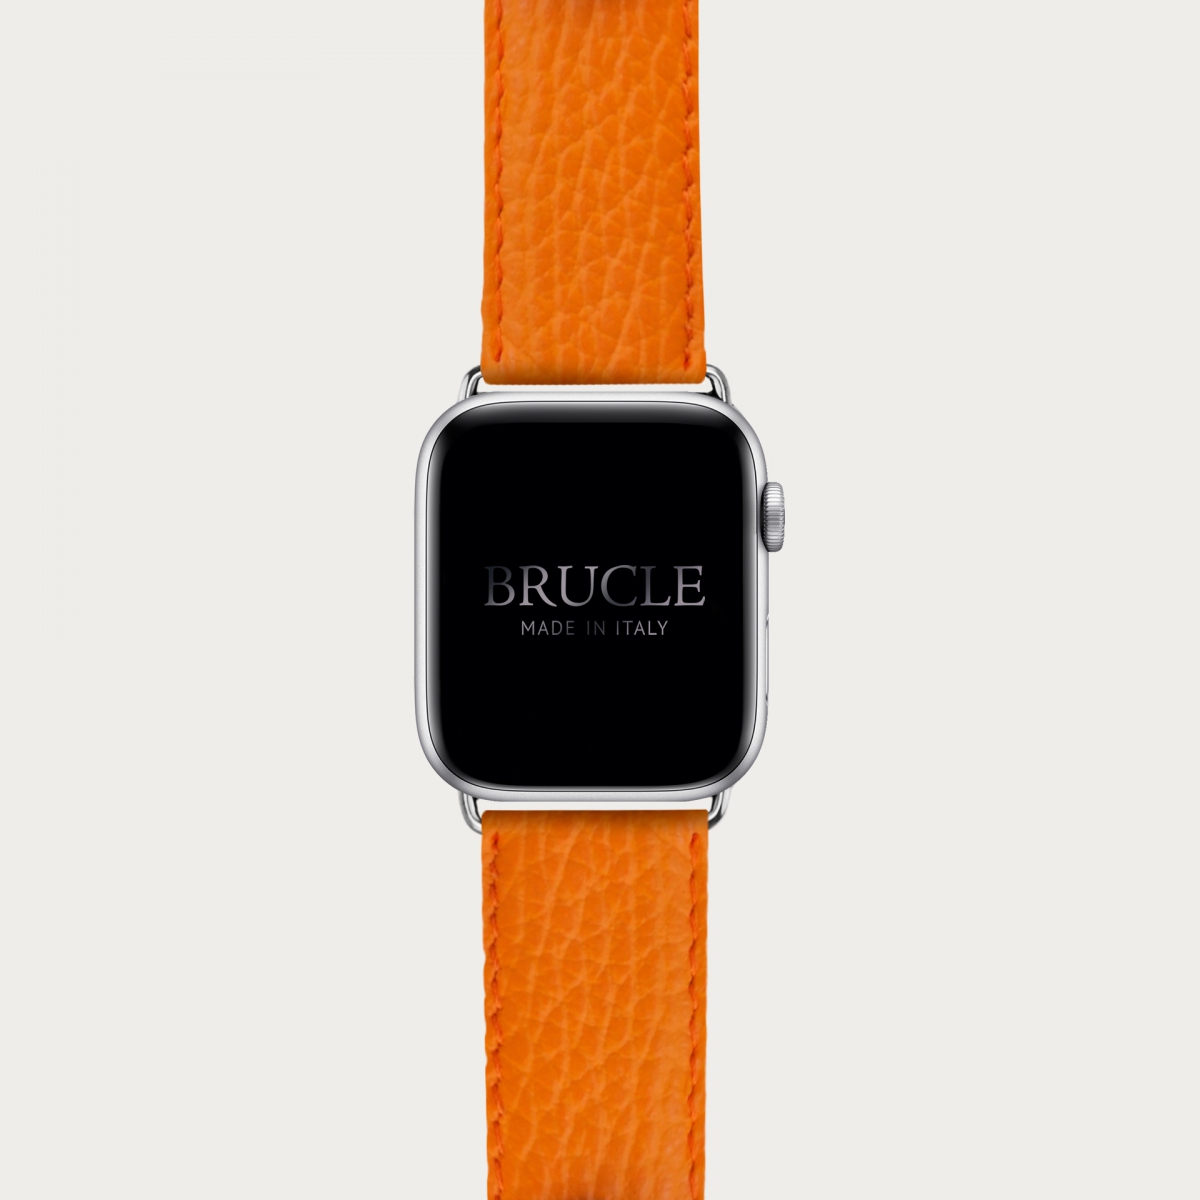 Correa de reloj compatible con Apple Watch / Samsung smartwatch, estampado naranja